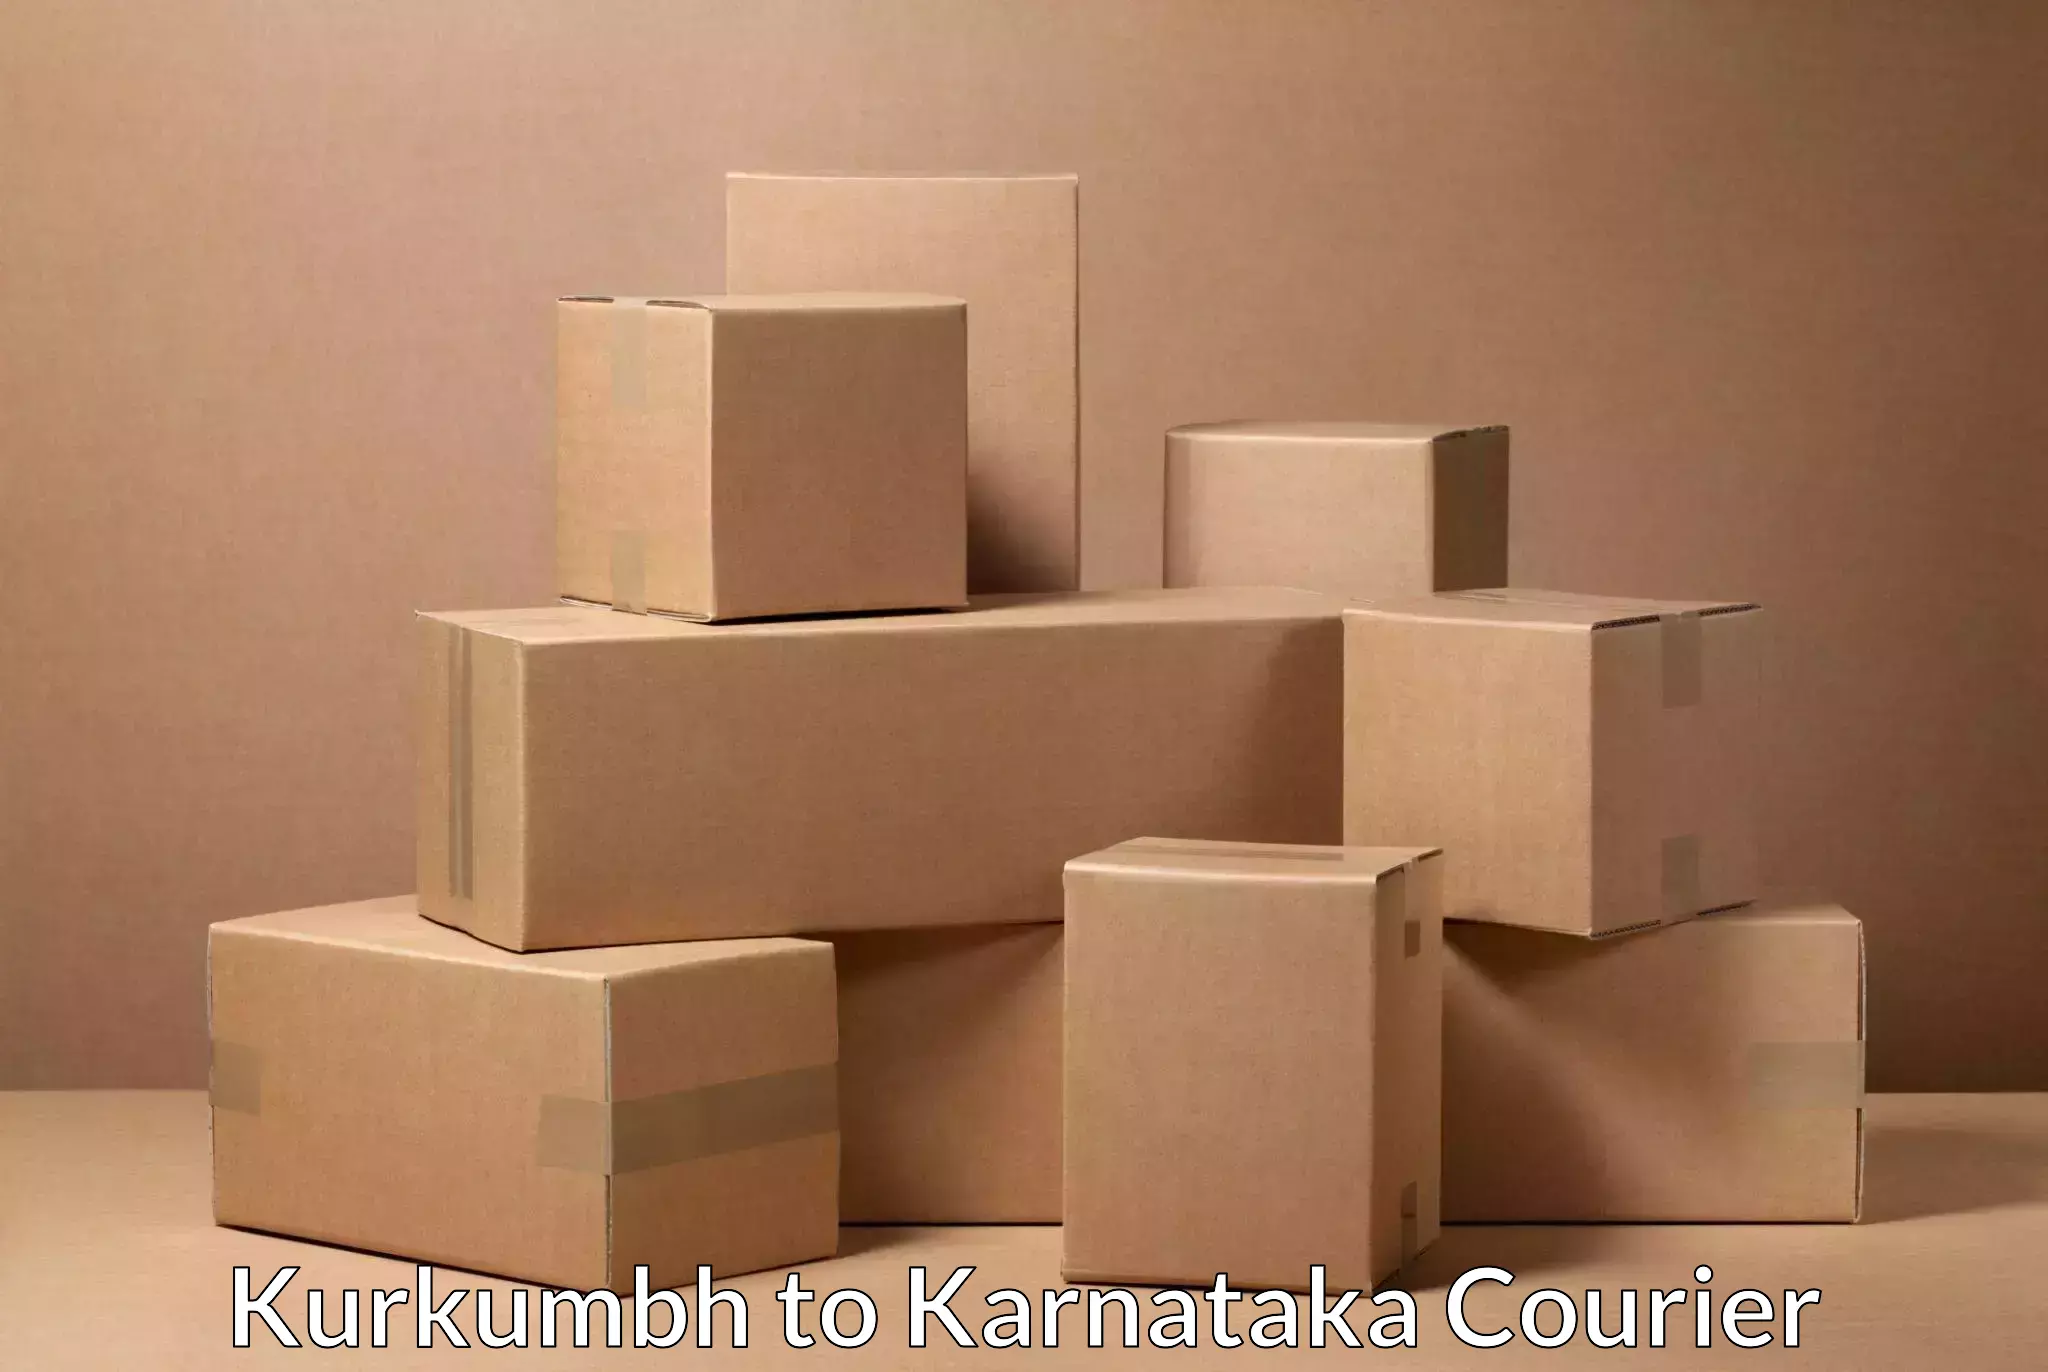 Rapid freight solutions Kurkumbh to Karnataka